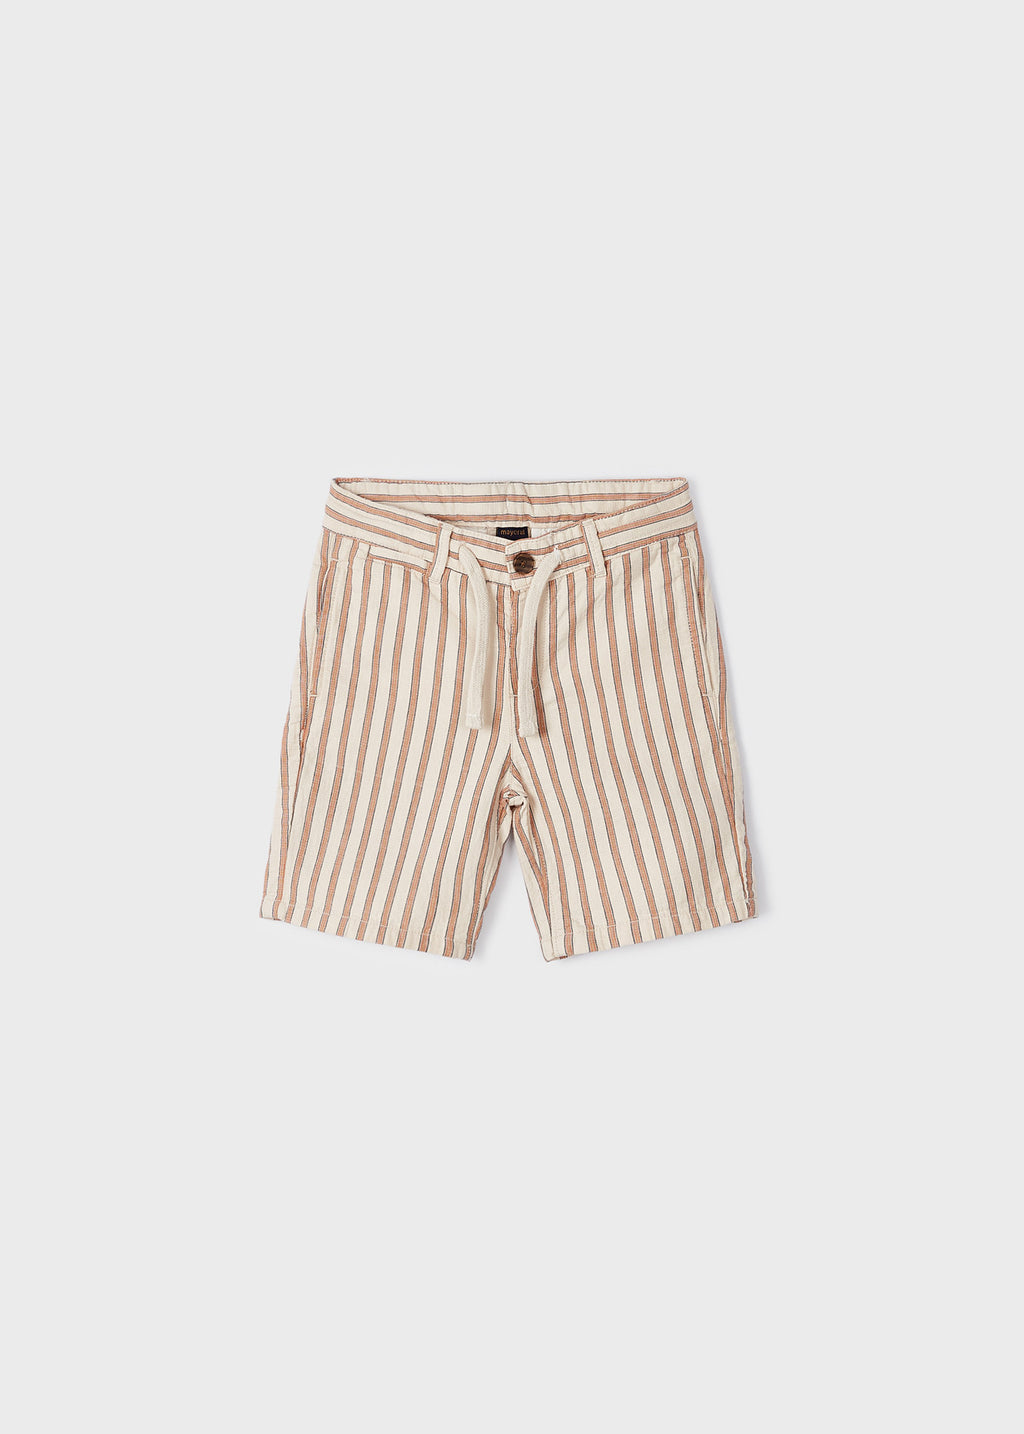 Adjustable Waist Sustainable Cotton Shorts Boy 3230